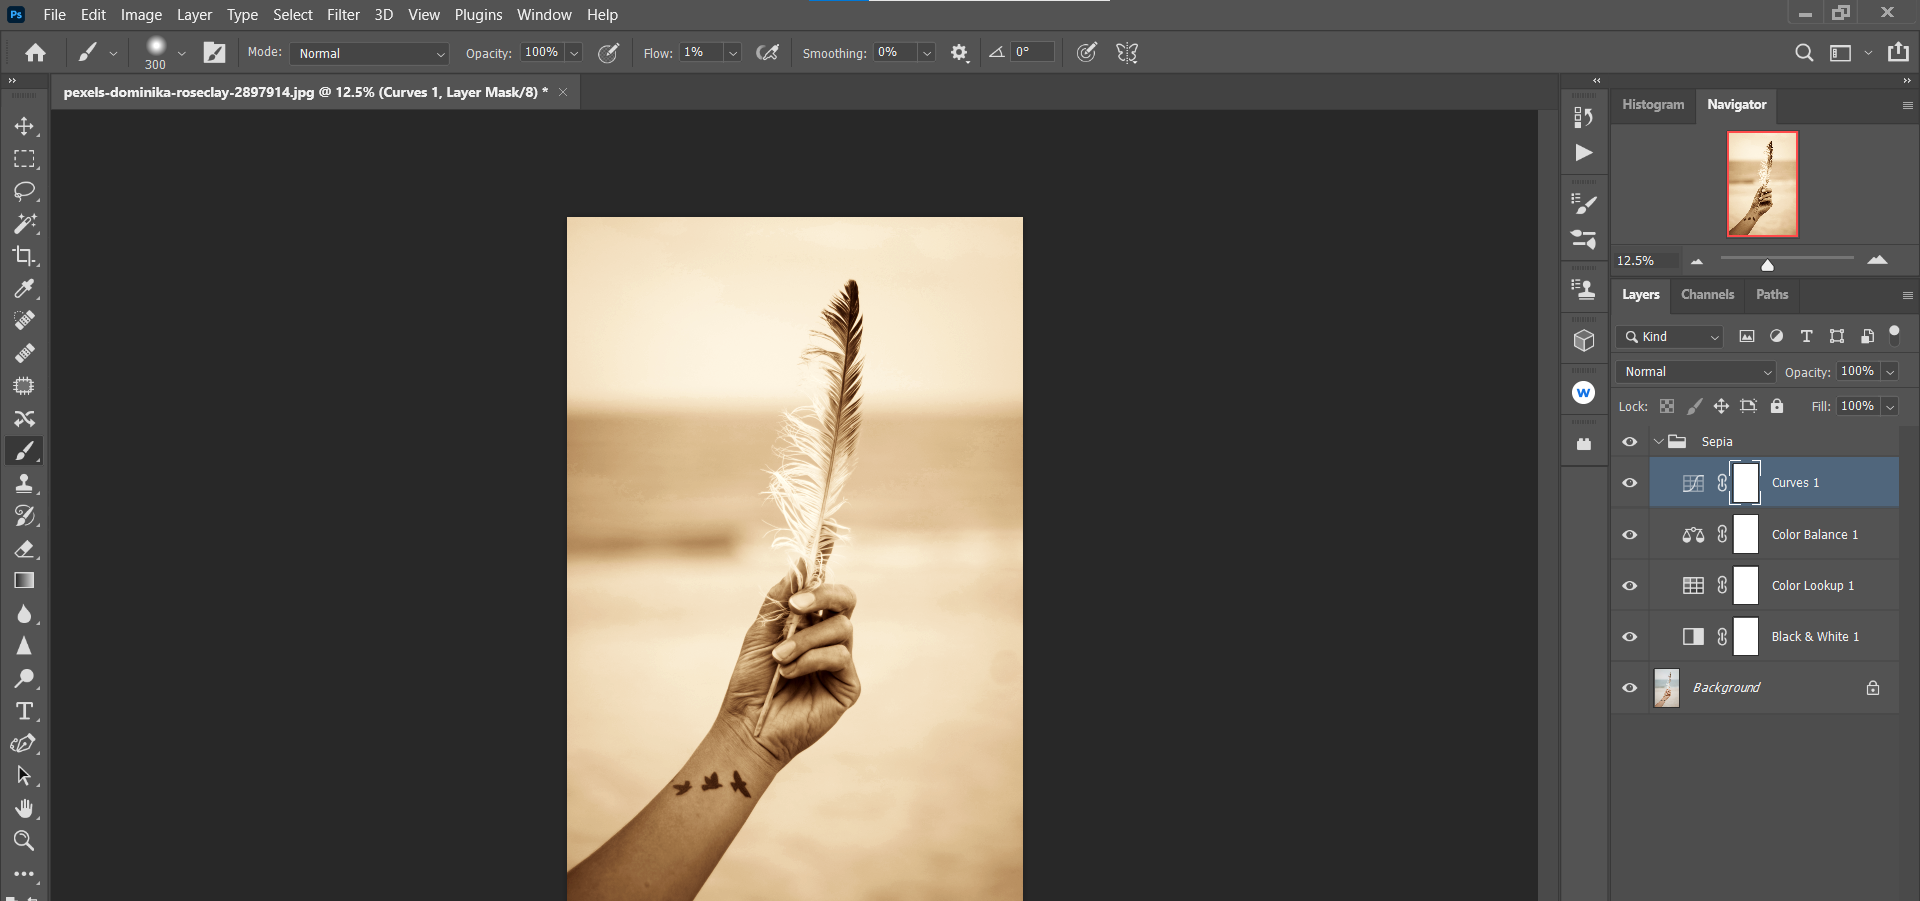 Feather - Come creare un effetto seppia personalizzato in Photoshop